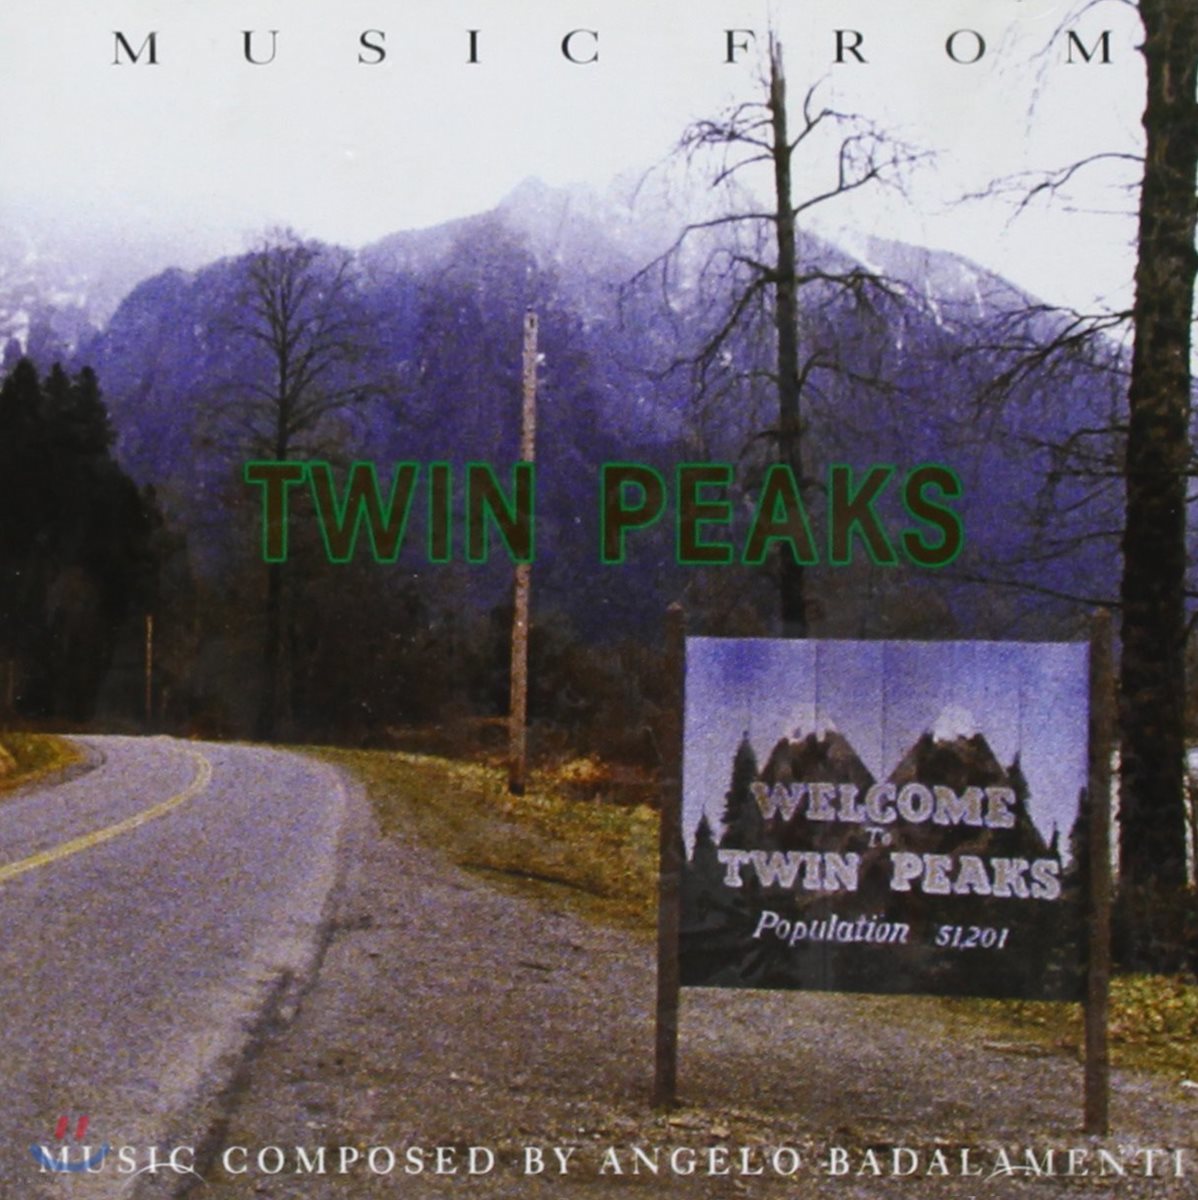 데이빗 린치의 TV 시리즈 '트윈 픽스' 음악 (Twin Peaks OST by Angelo Badalamenti 안젤로 바달라멘티)